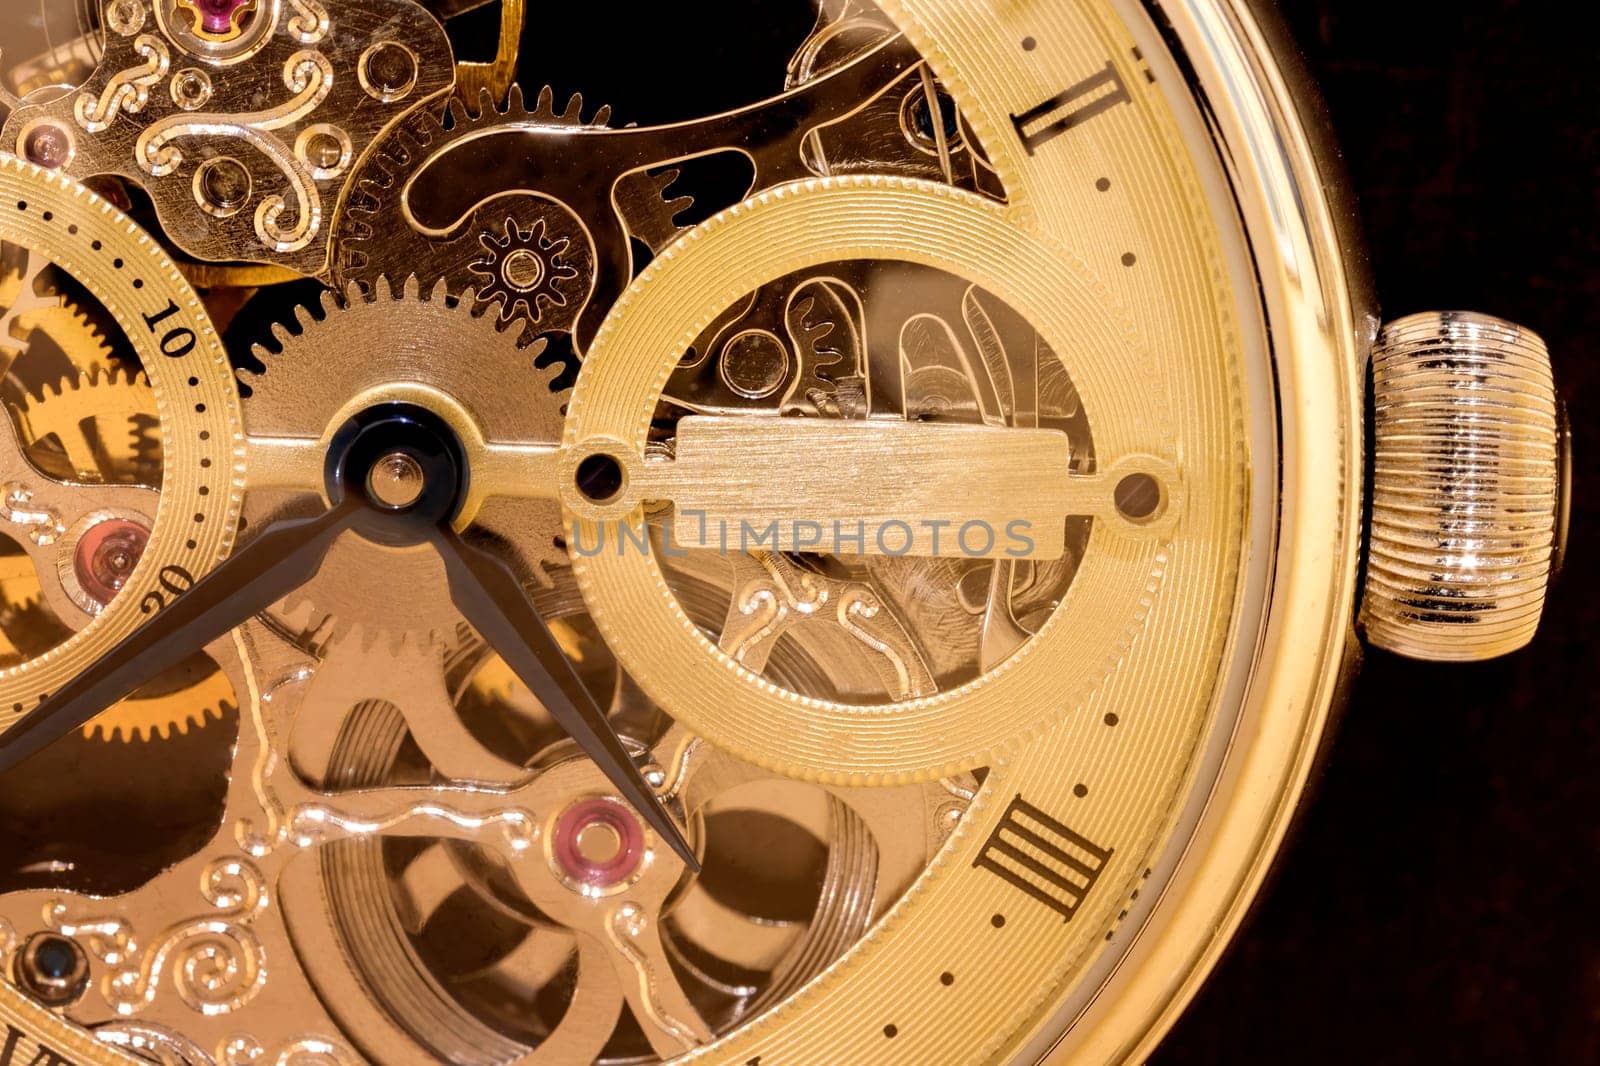 Macro shot of clockwork gears inside the watch by EdVal